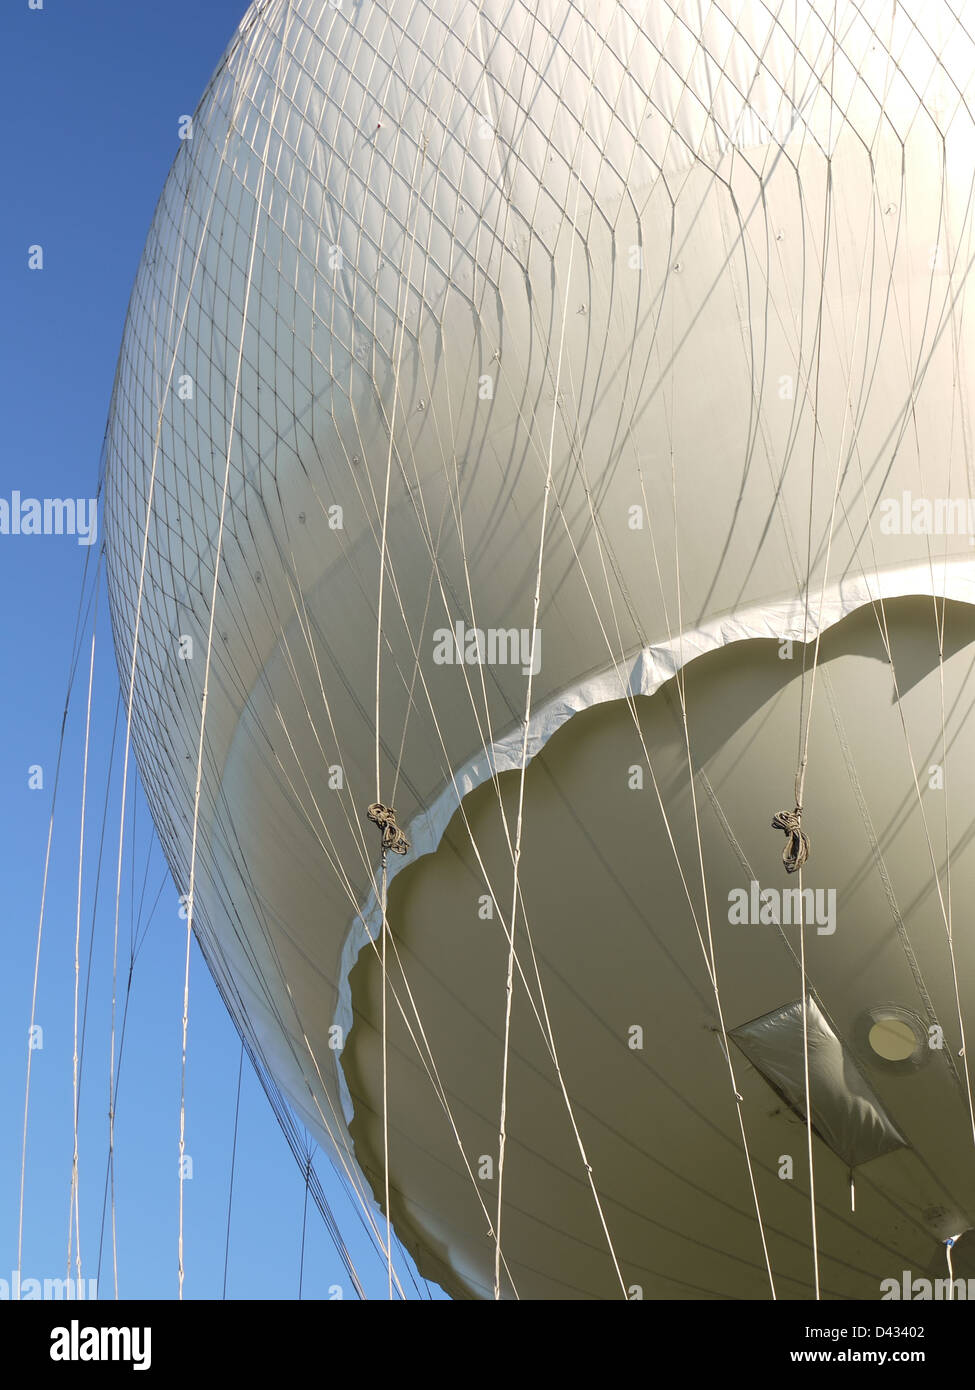 Gros plan du ballon à air chaud blanc dans l'air Banque D'Images